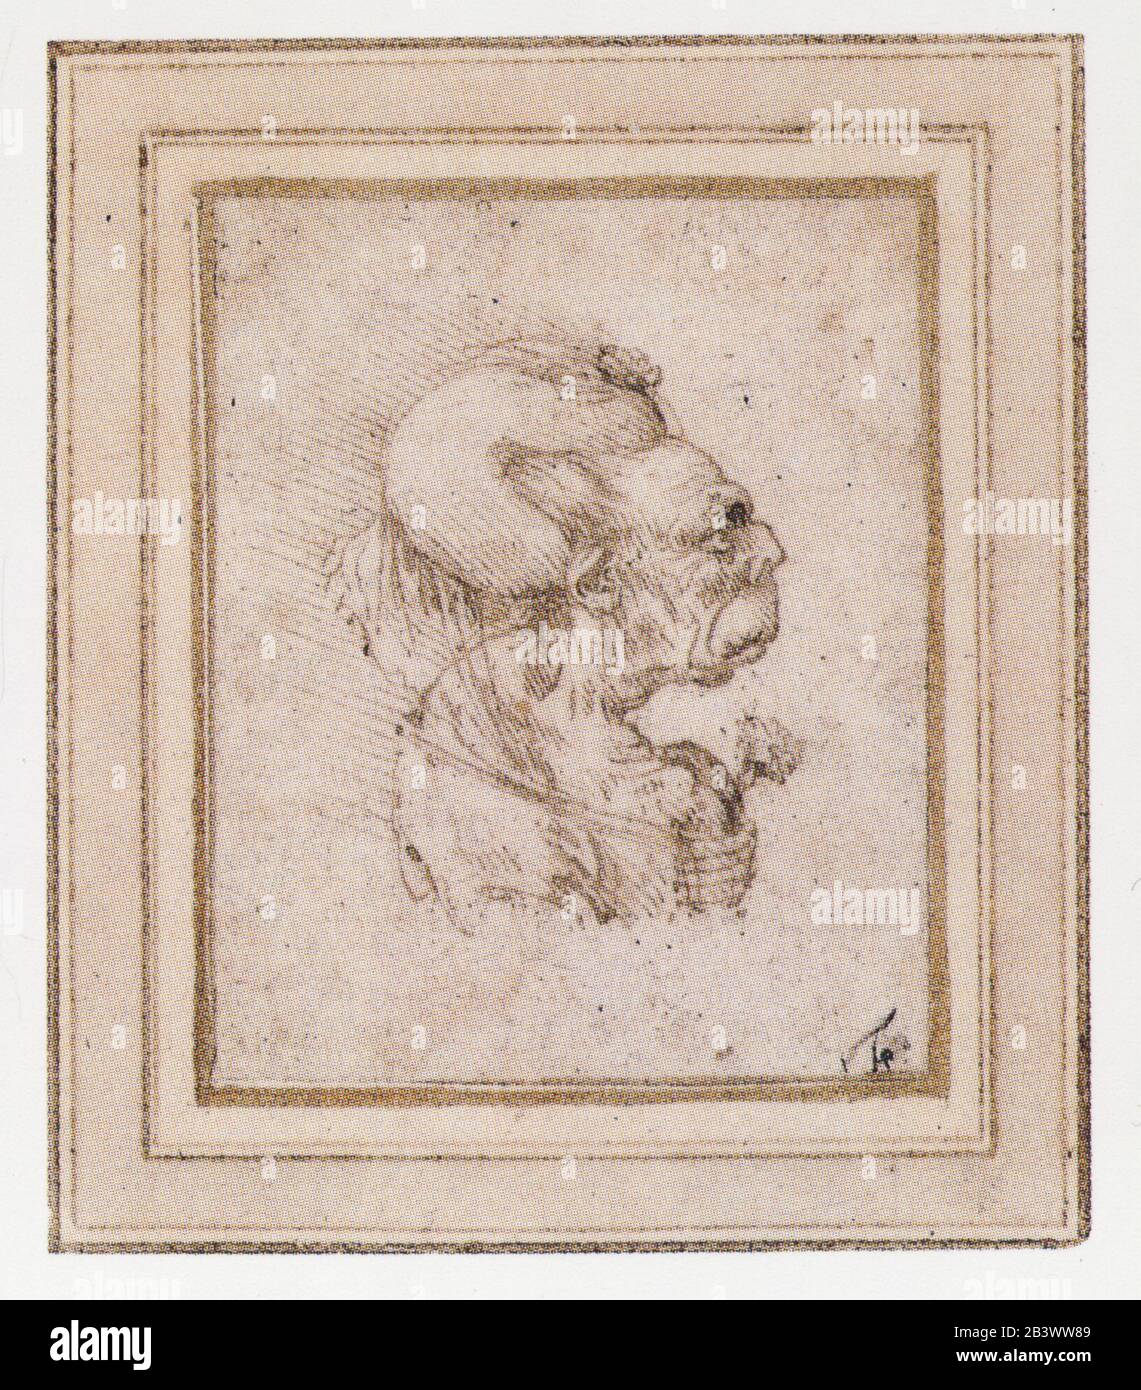 Léonard de Vinci. Caricature d'une vieille femme avec un oeillet. 1495 Banque D'Images